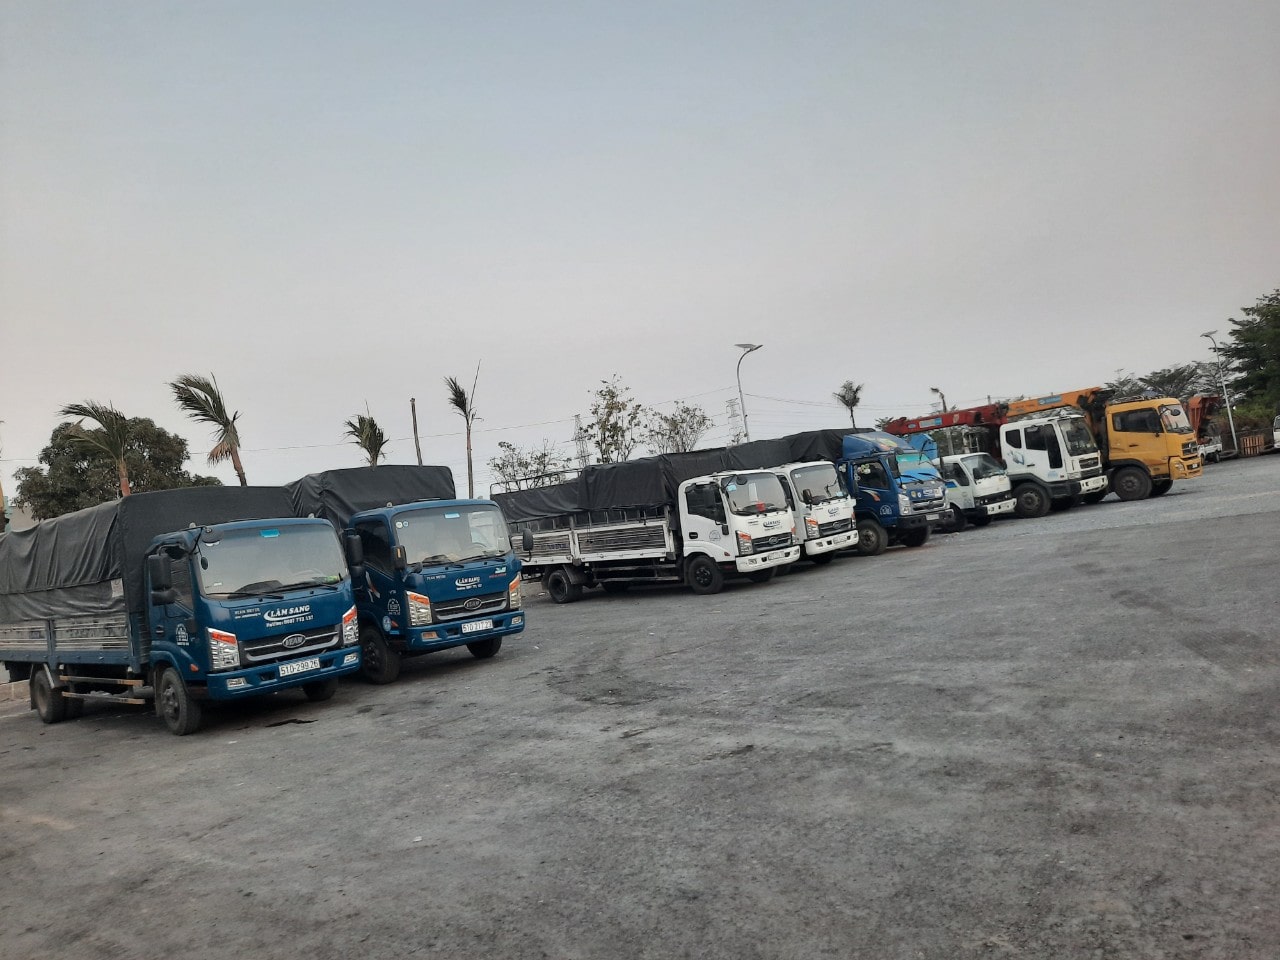 Dịch vụ vận tải - chuyển dọn nhà trọn gói và cho thuê xe tải chuyển nhà bằng xe tải giá rẻ tại tphcm